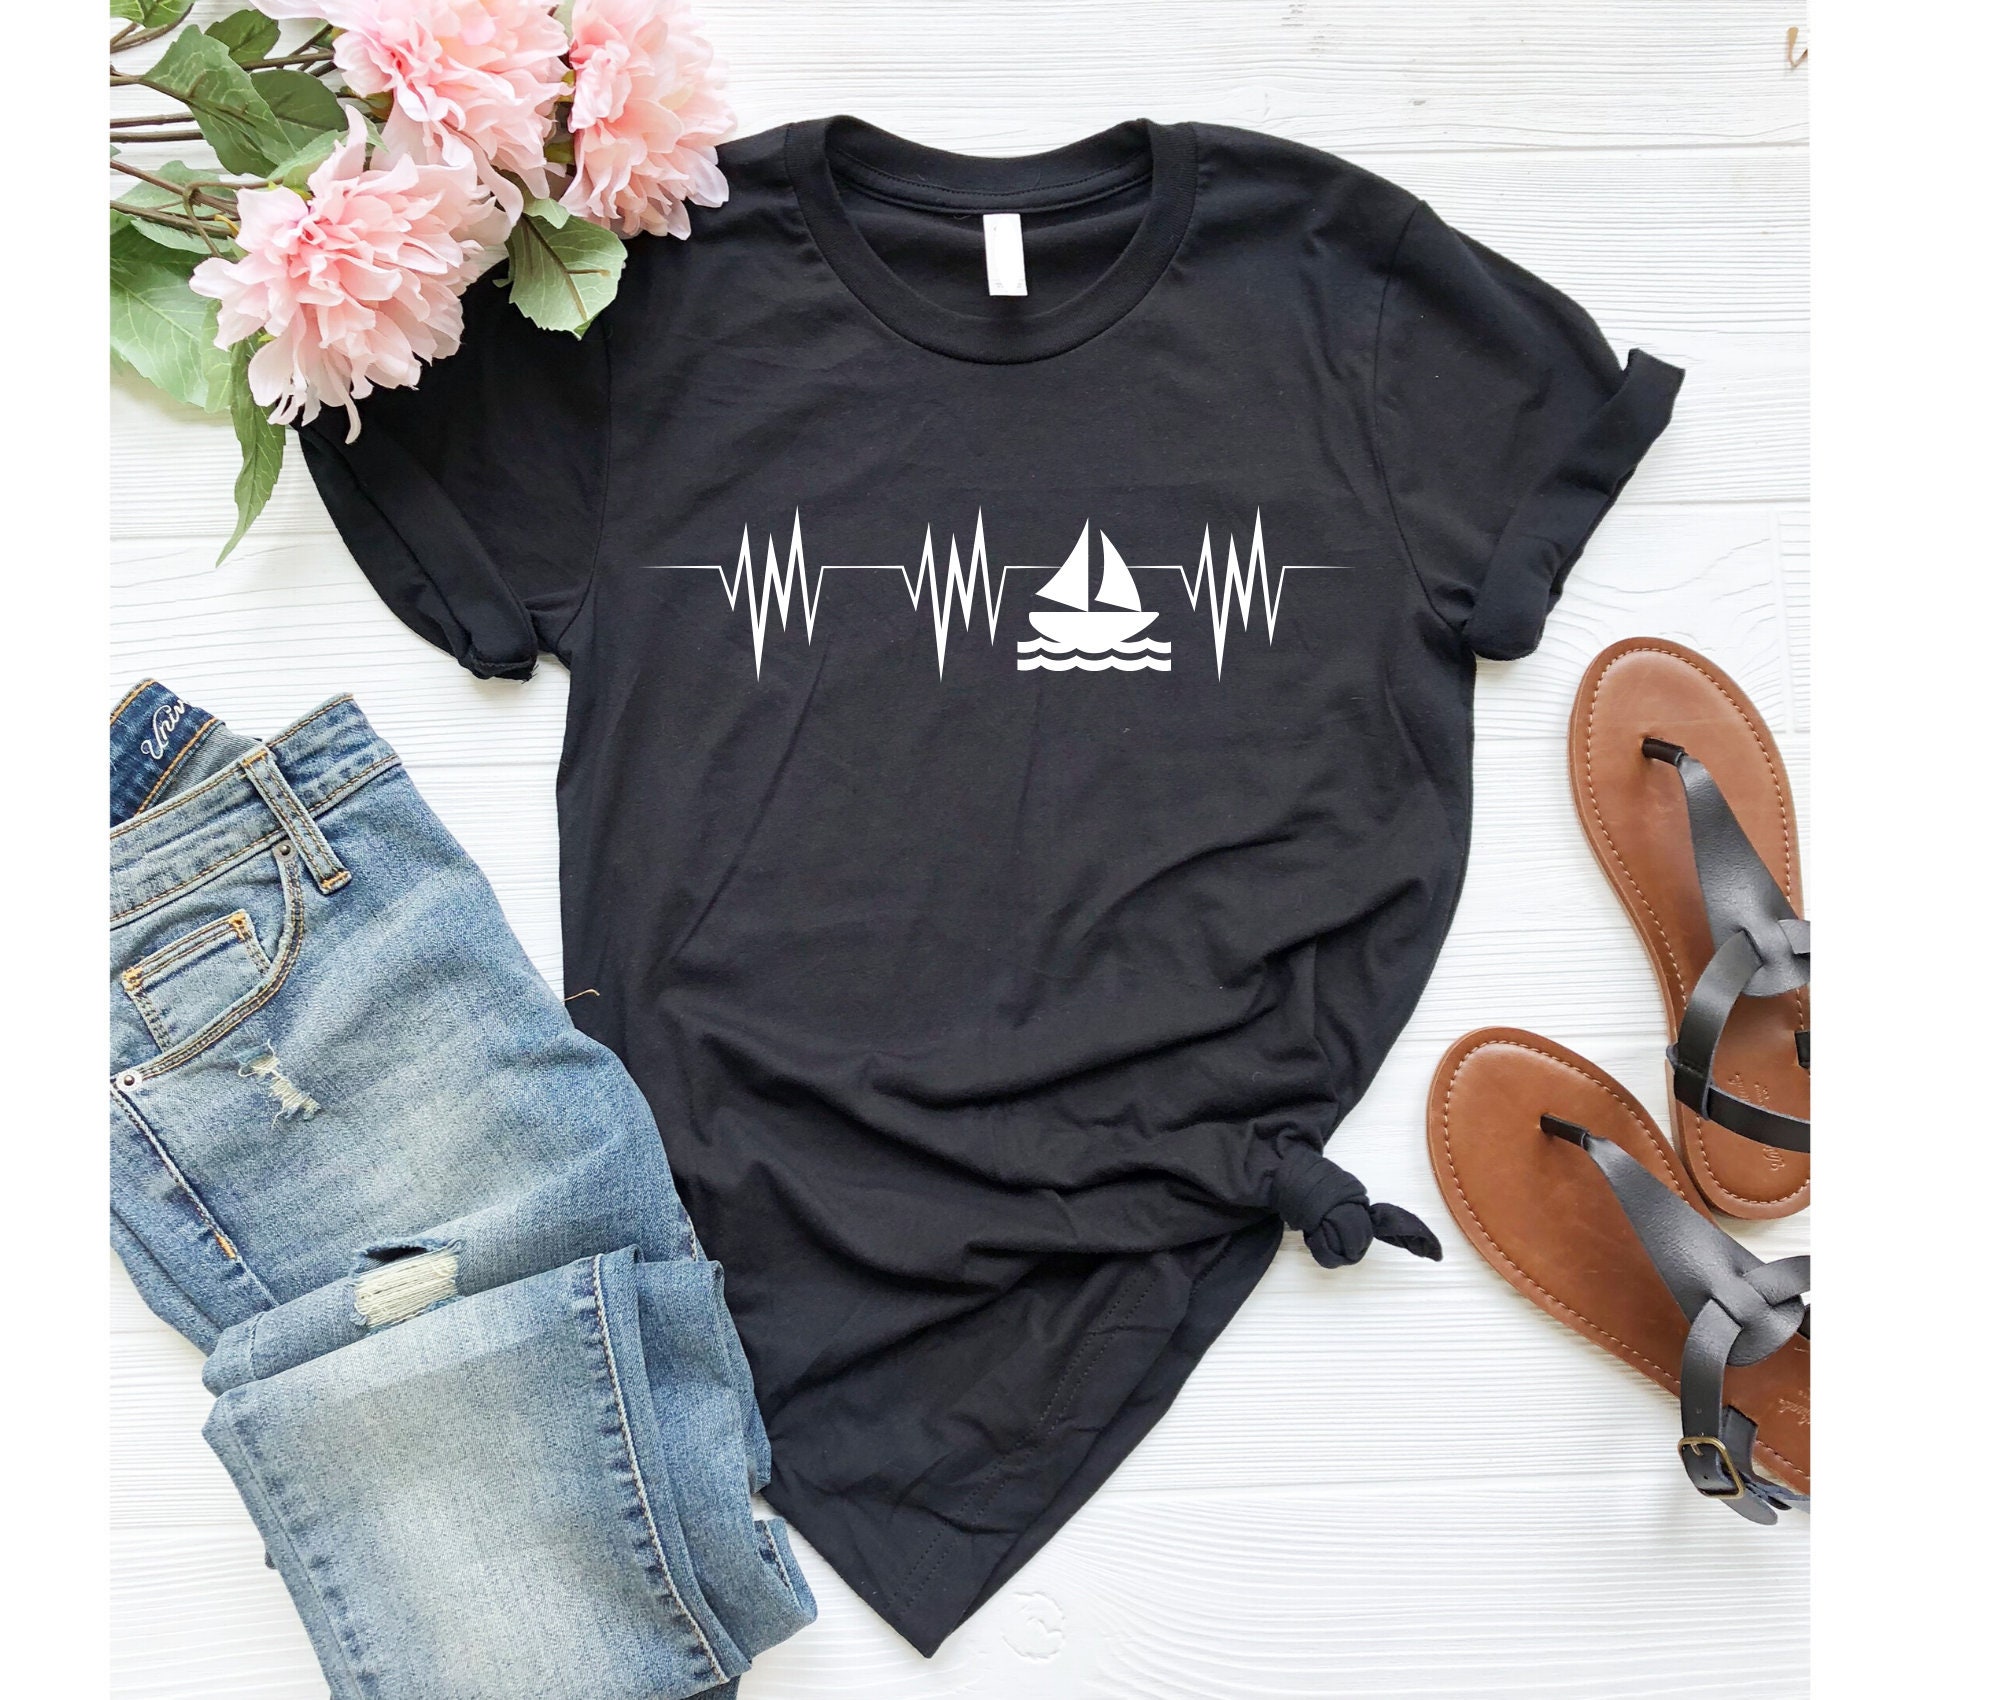 Sailing Heartbeat Shirt Boating Shirt Sailing Gift Lake Shirt | Etsy